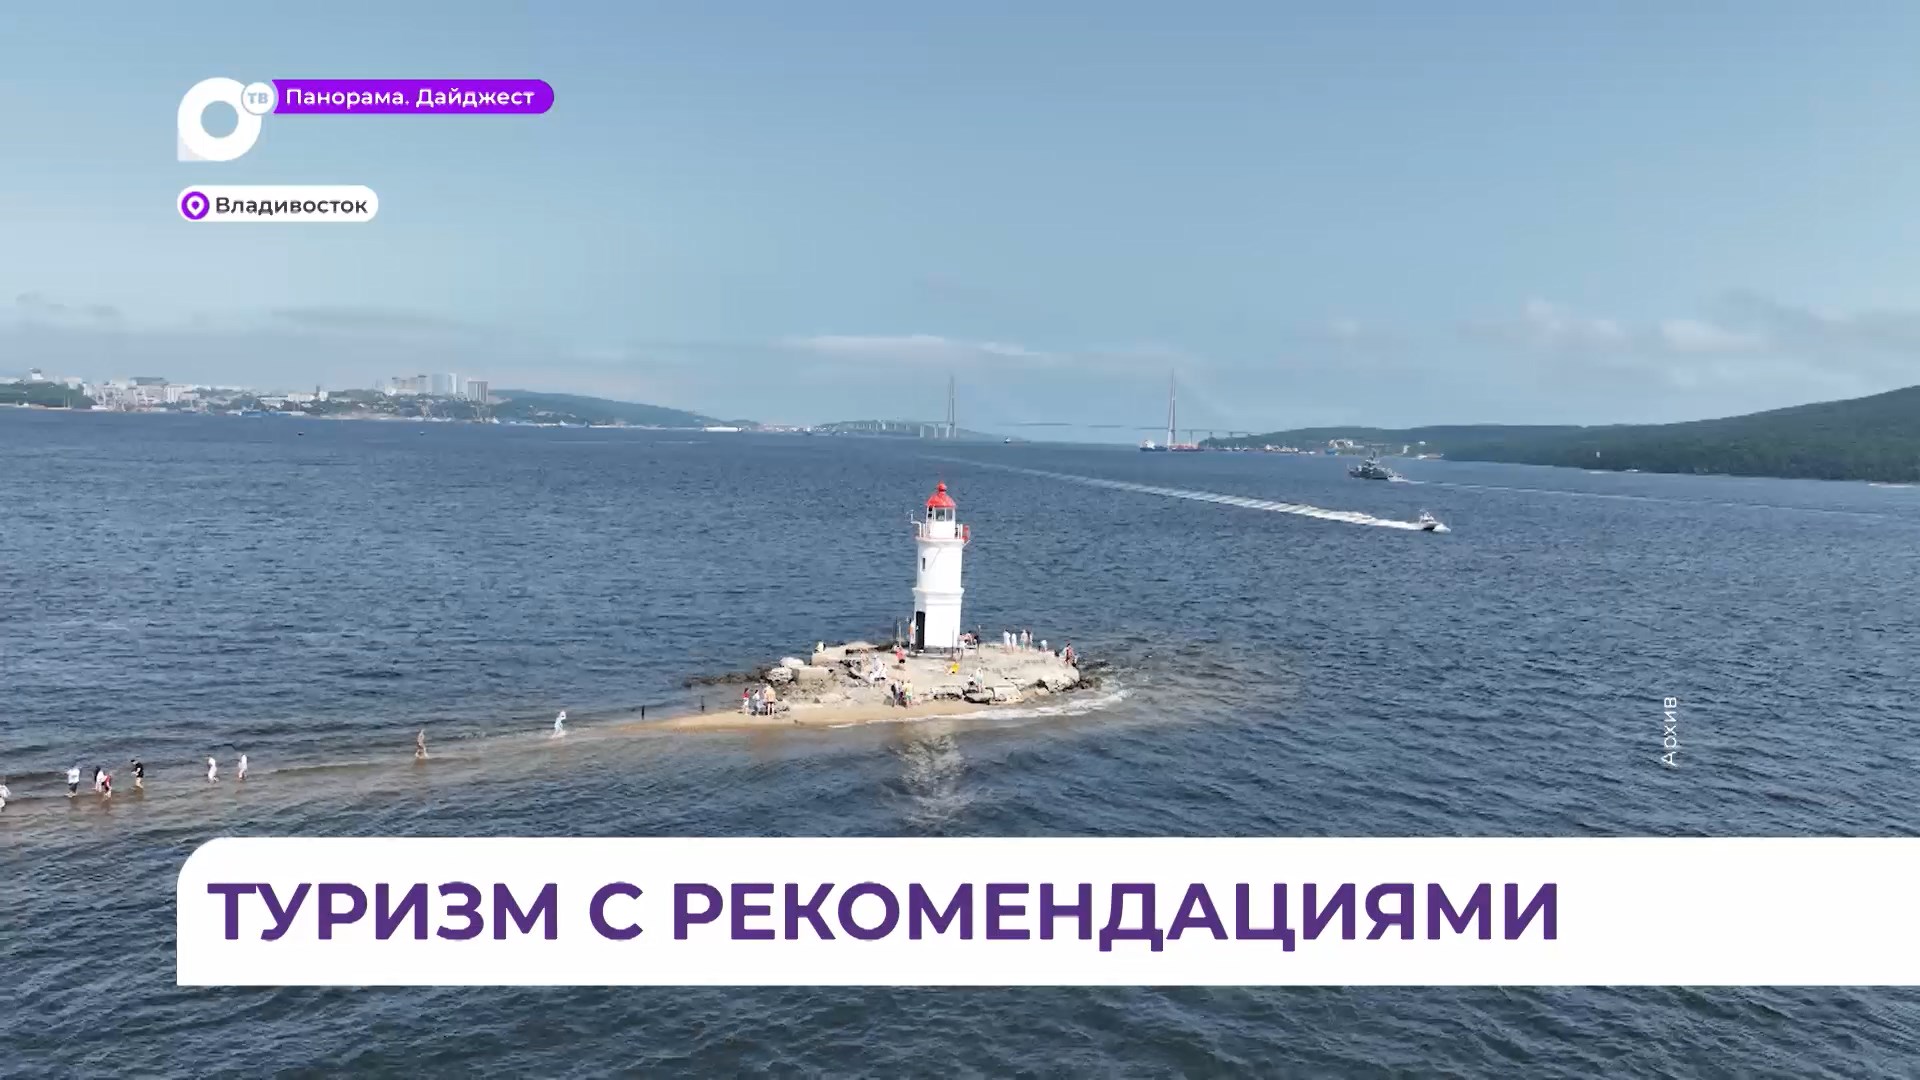 Работу российских турфирм помогут скорректировать приморские путешественники